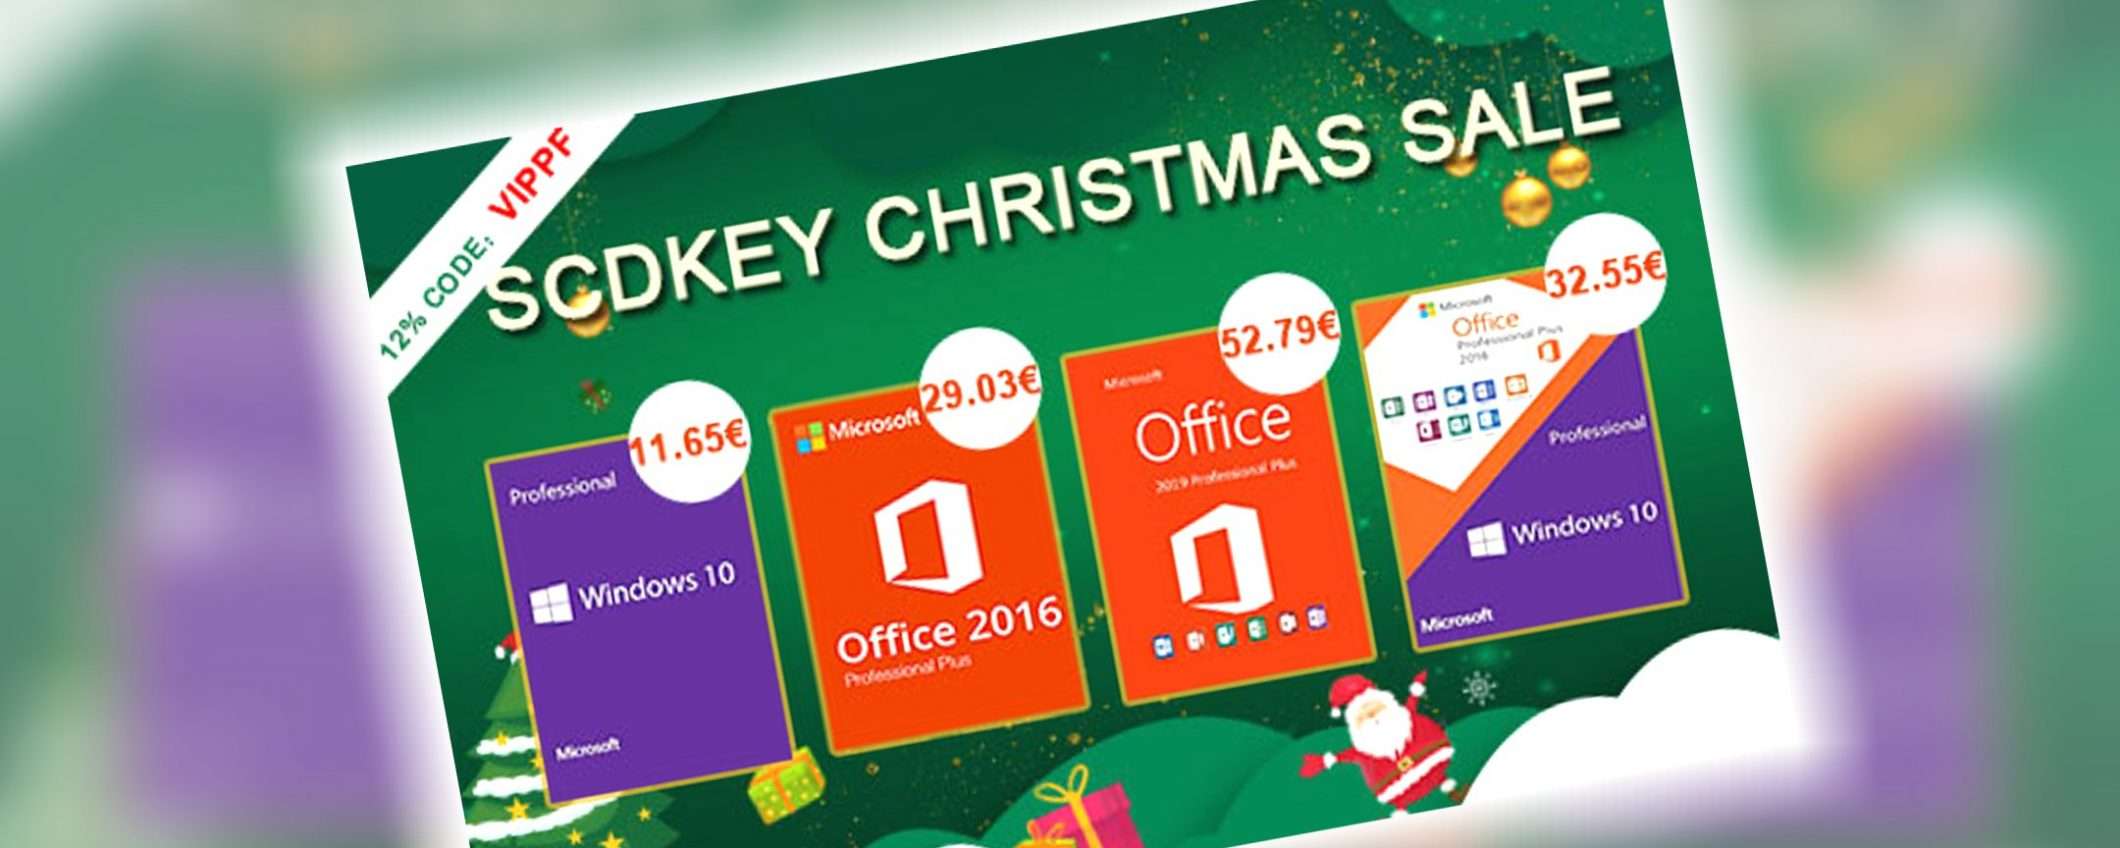 SCDKey per Natale: Windows 10 Pro 11€ e Office 2016 29€